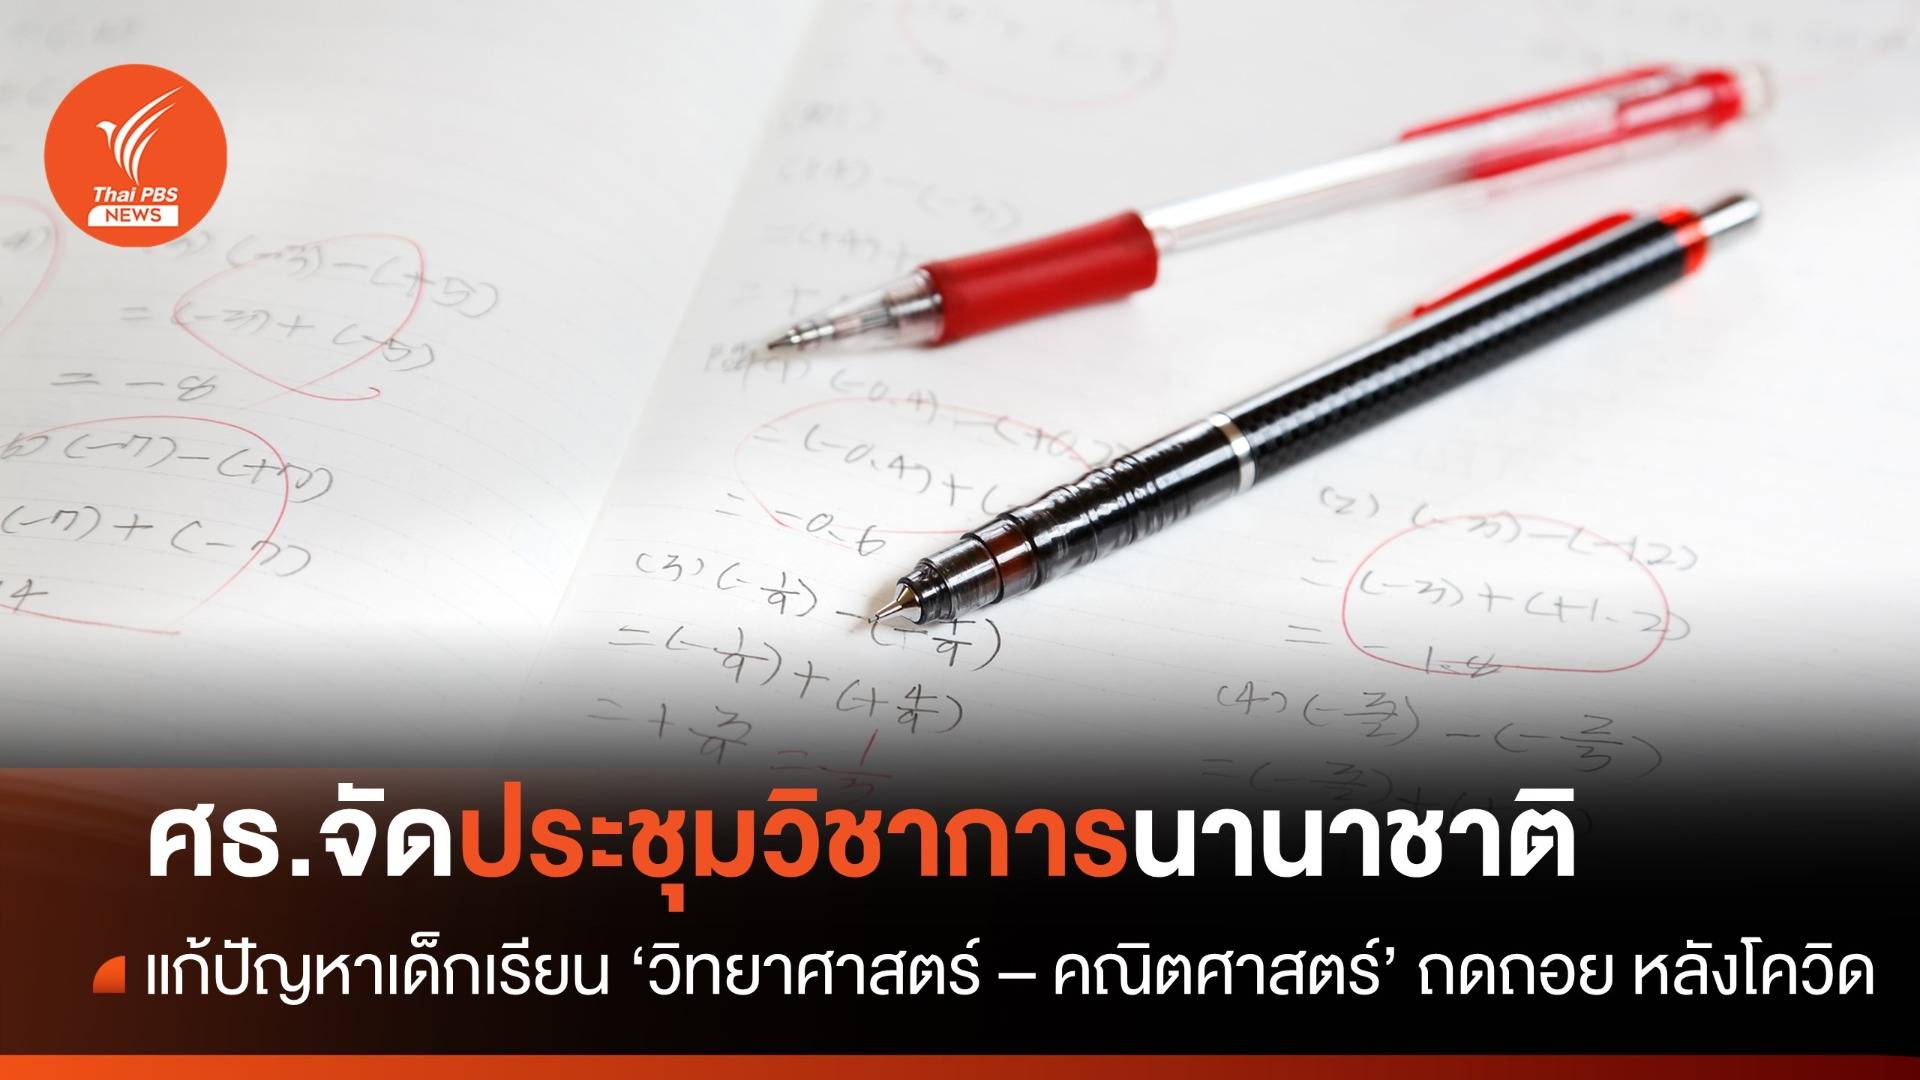 ศธ.นัดถกแก้ปัญหาการเรียน"วิทย์ฯ - คณิต" เด็กไทย หลังโควิด-19